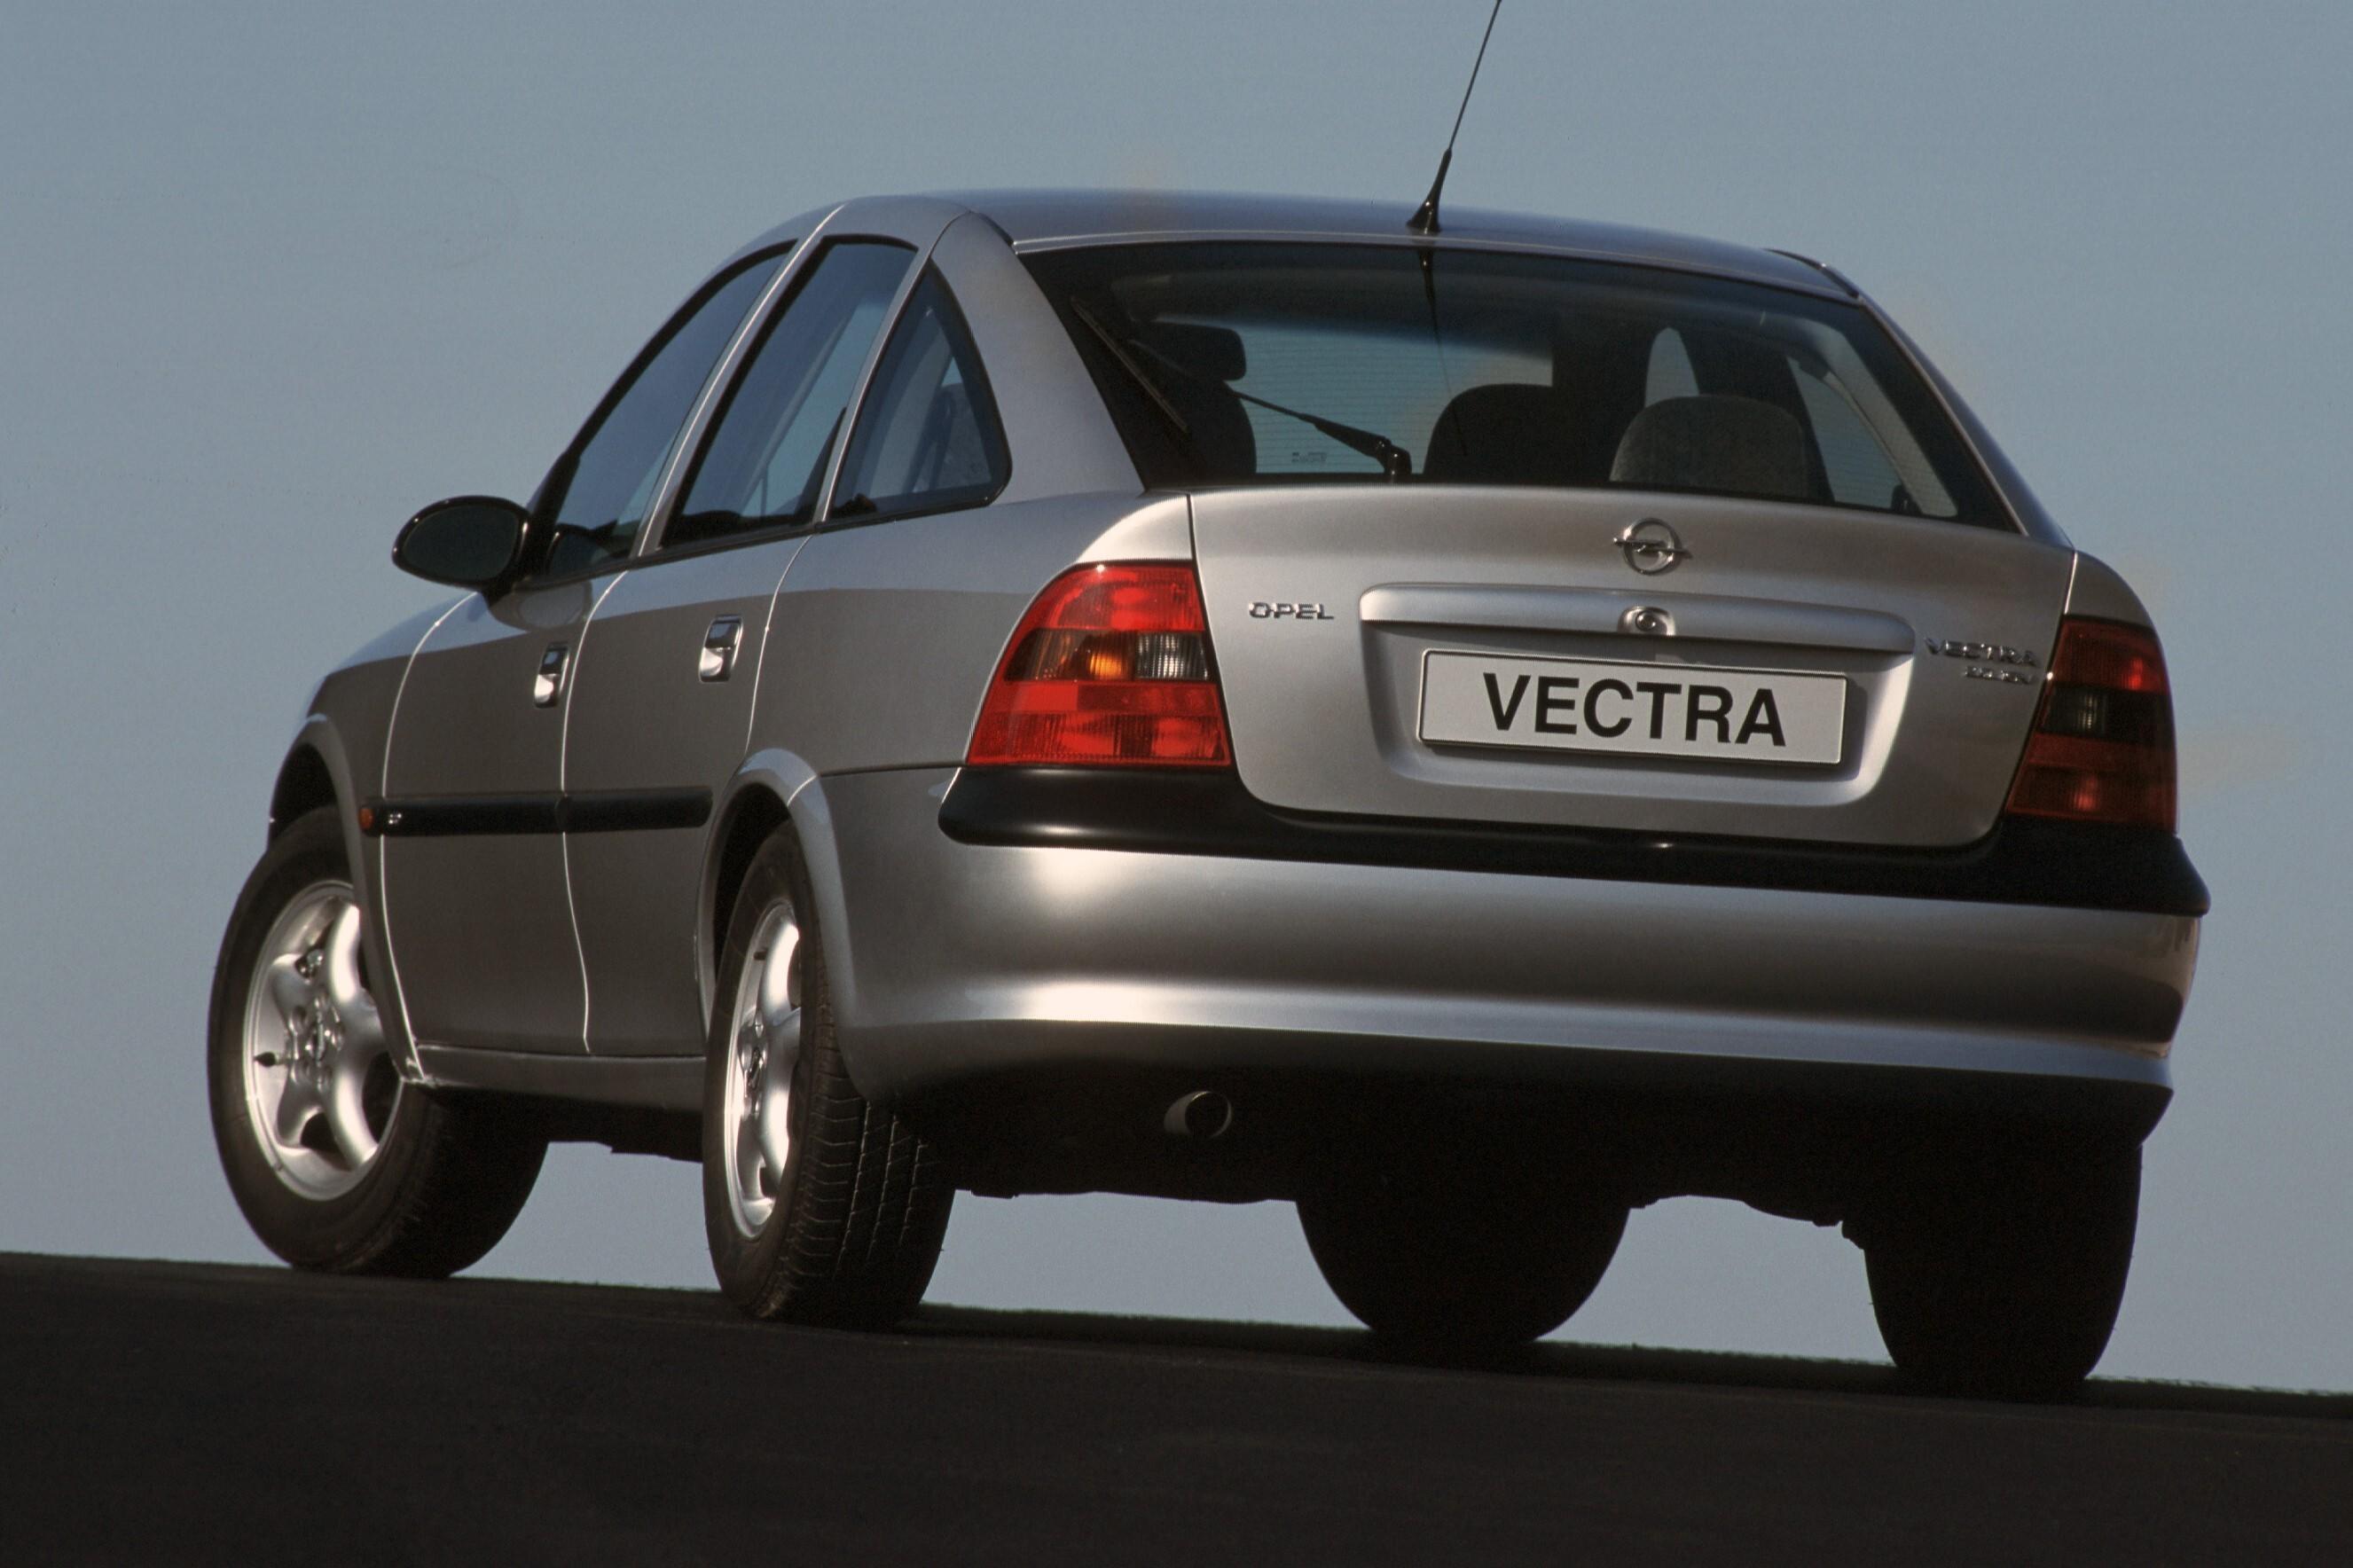 Автомобиль вектра б. Opel Vectra b. Opel Vectra b 1.6. Opel Vectra 1.6. Opel Vectra b хэтчбек 1999.